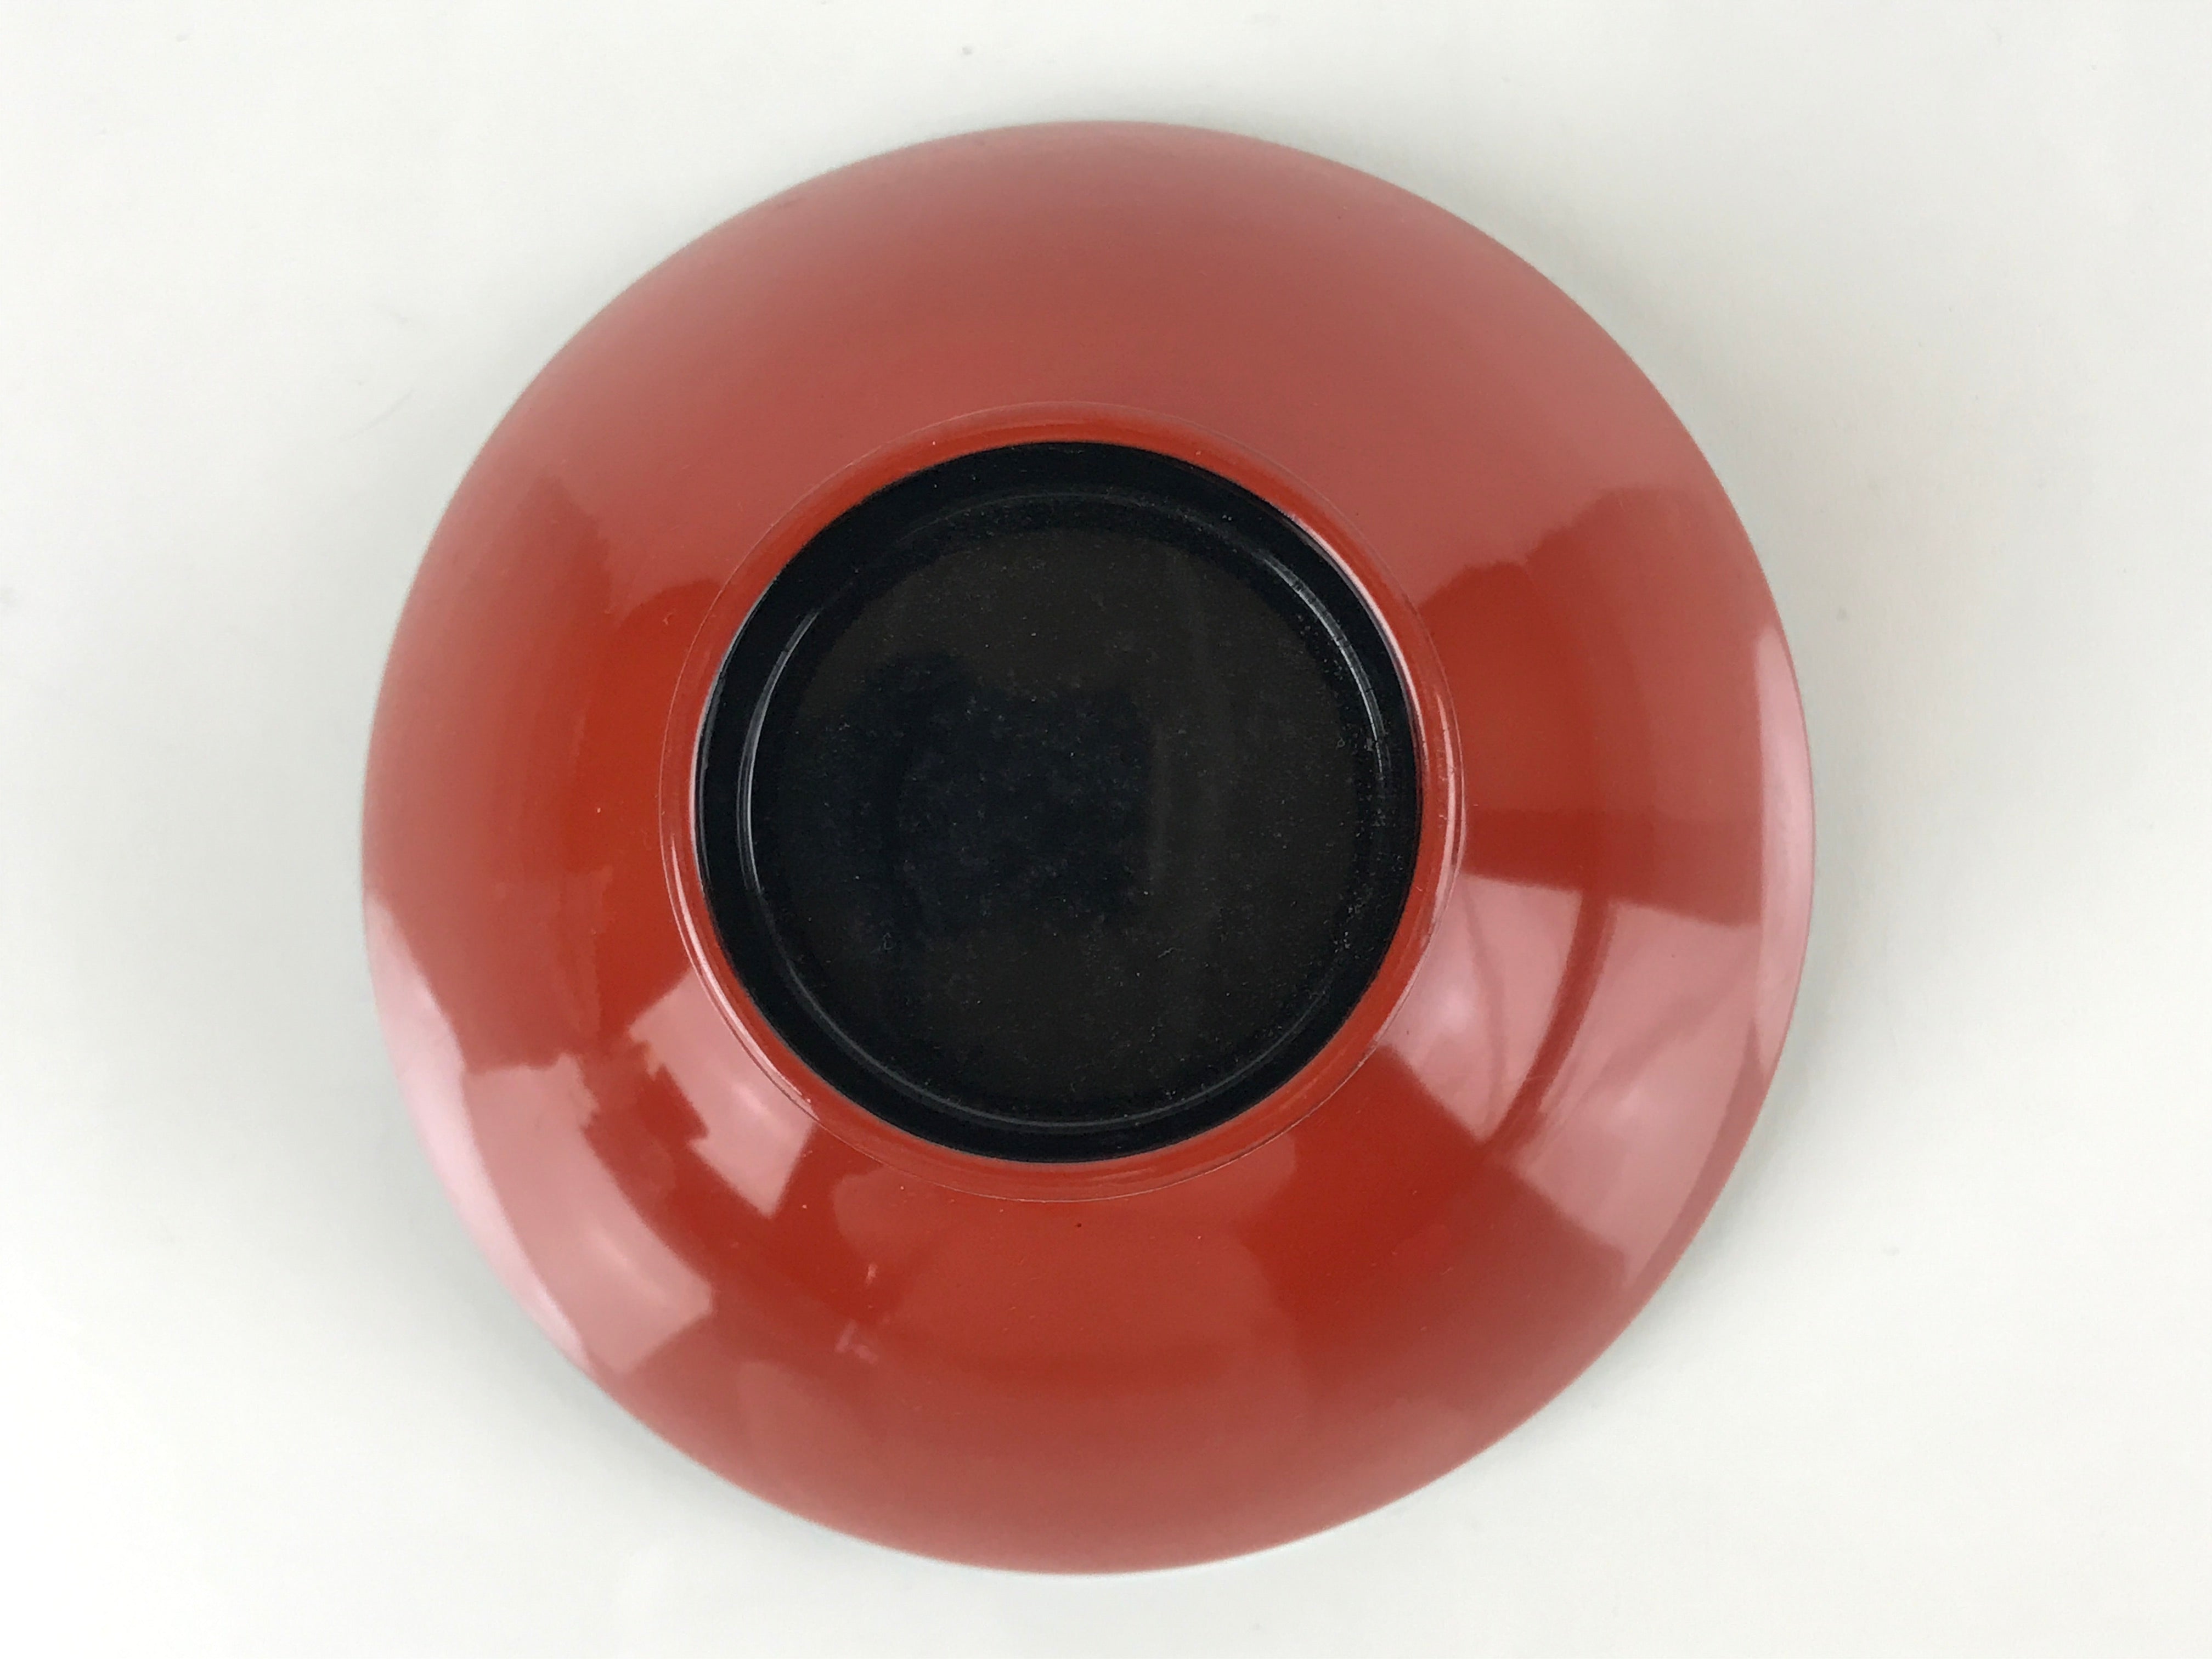 Japanese Lacquered Wooden Lidded Bowl Nimonowan Vtg Makie Red Black LB108